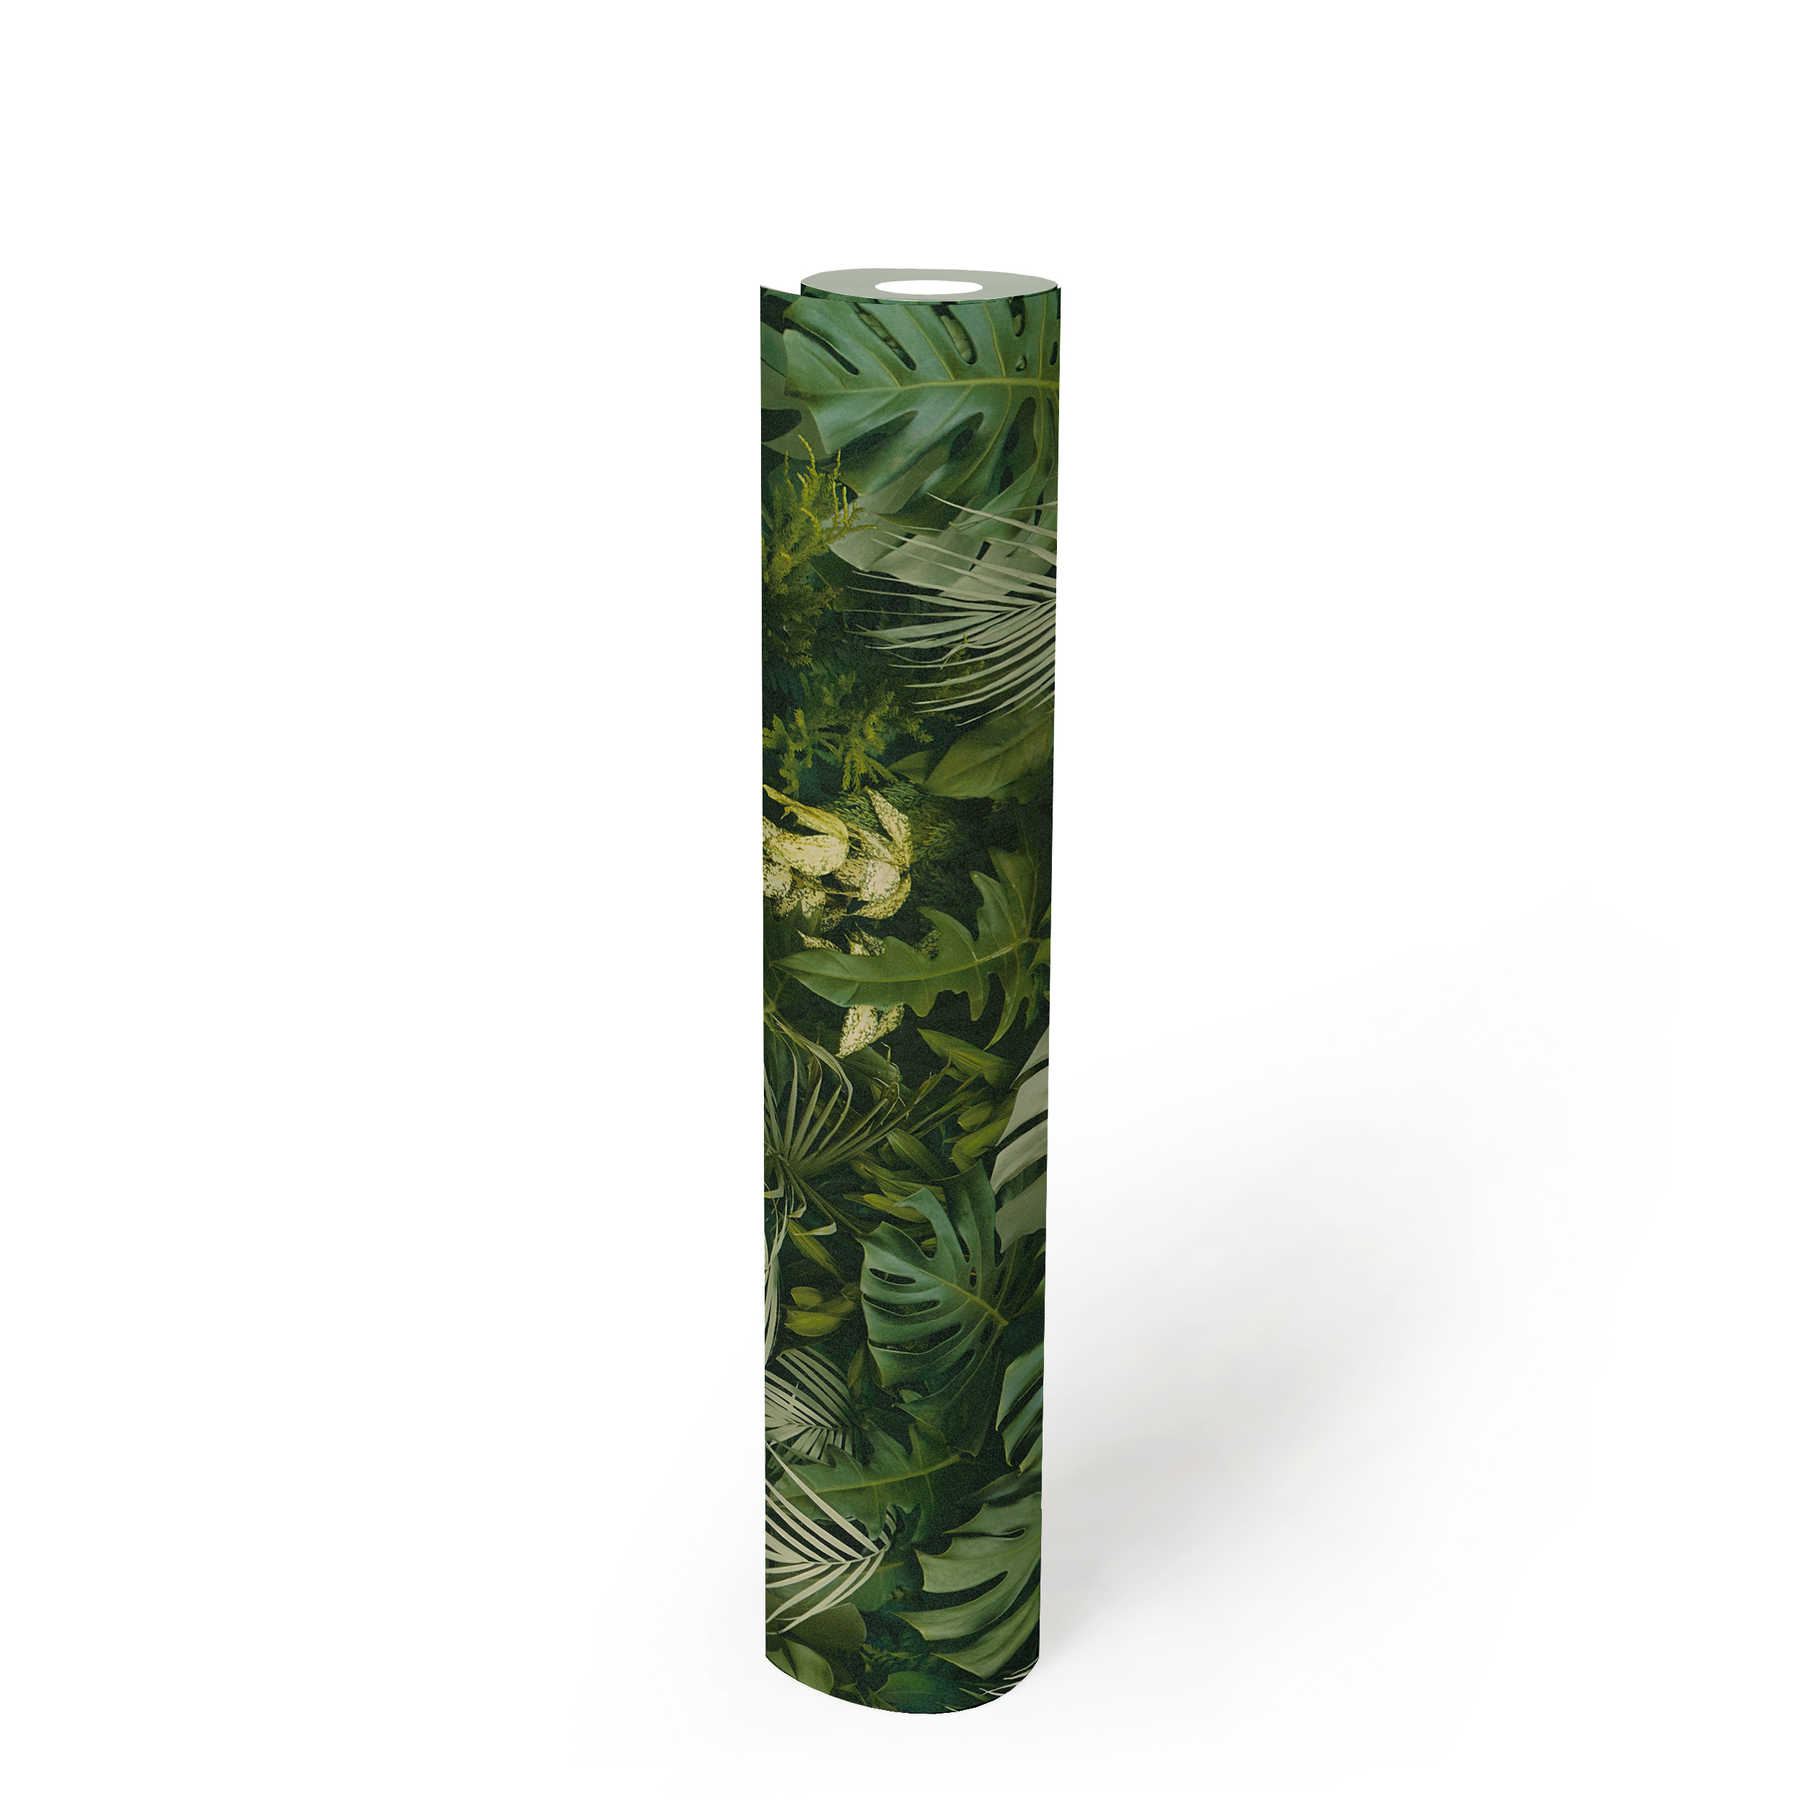             Tapete Grüner Blätterwald, realistisch, Farbakzente – Grün
        